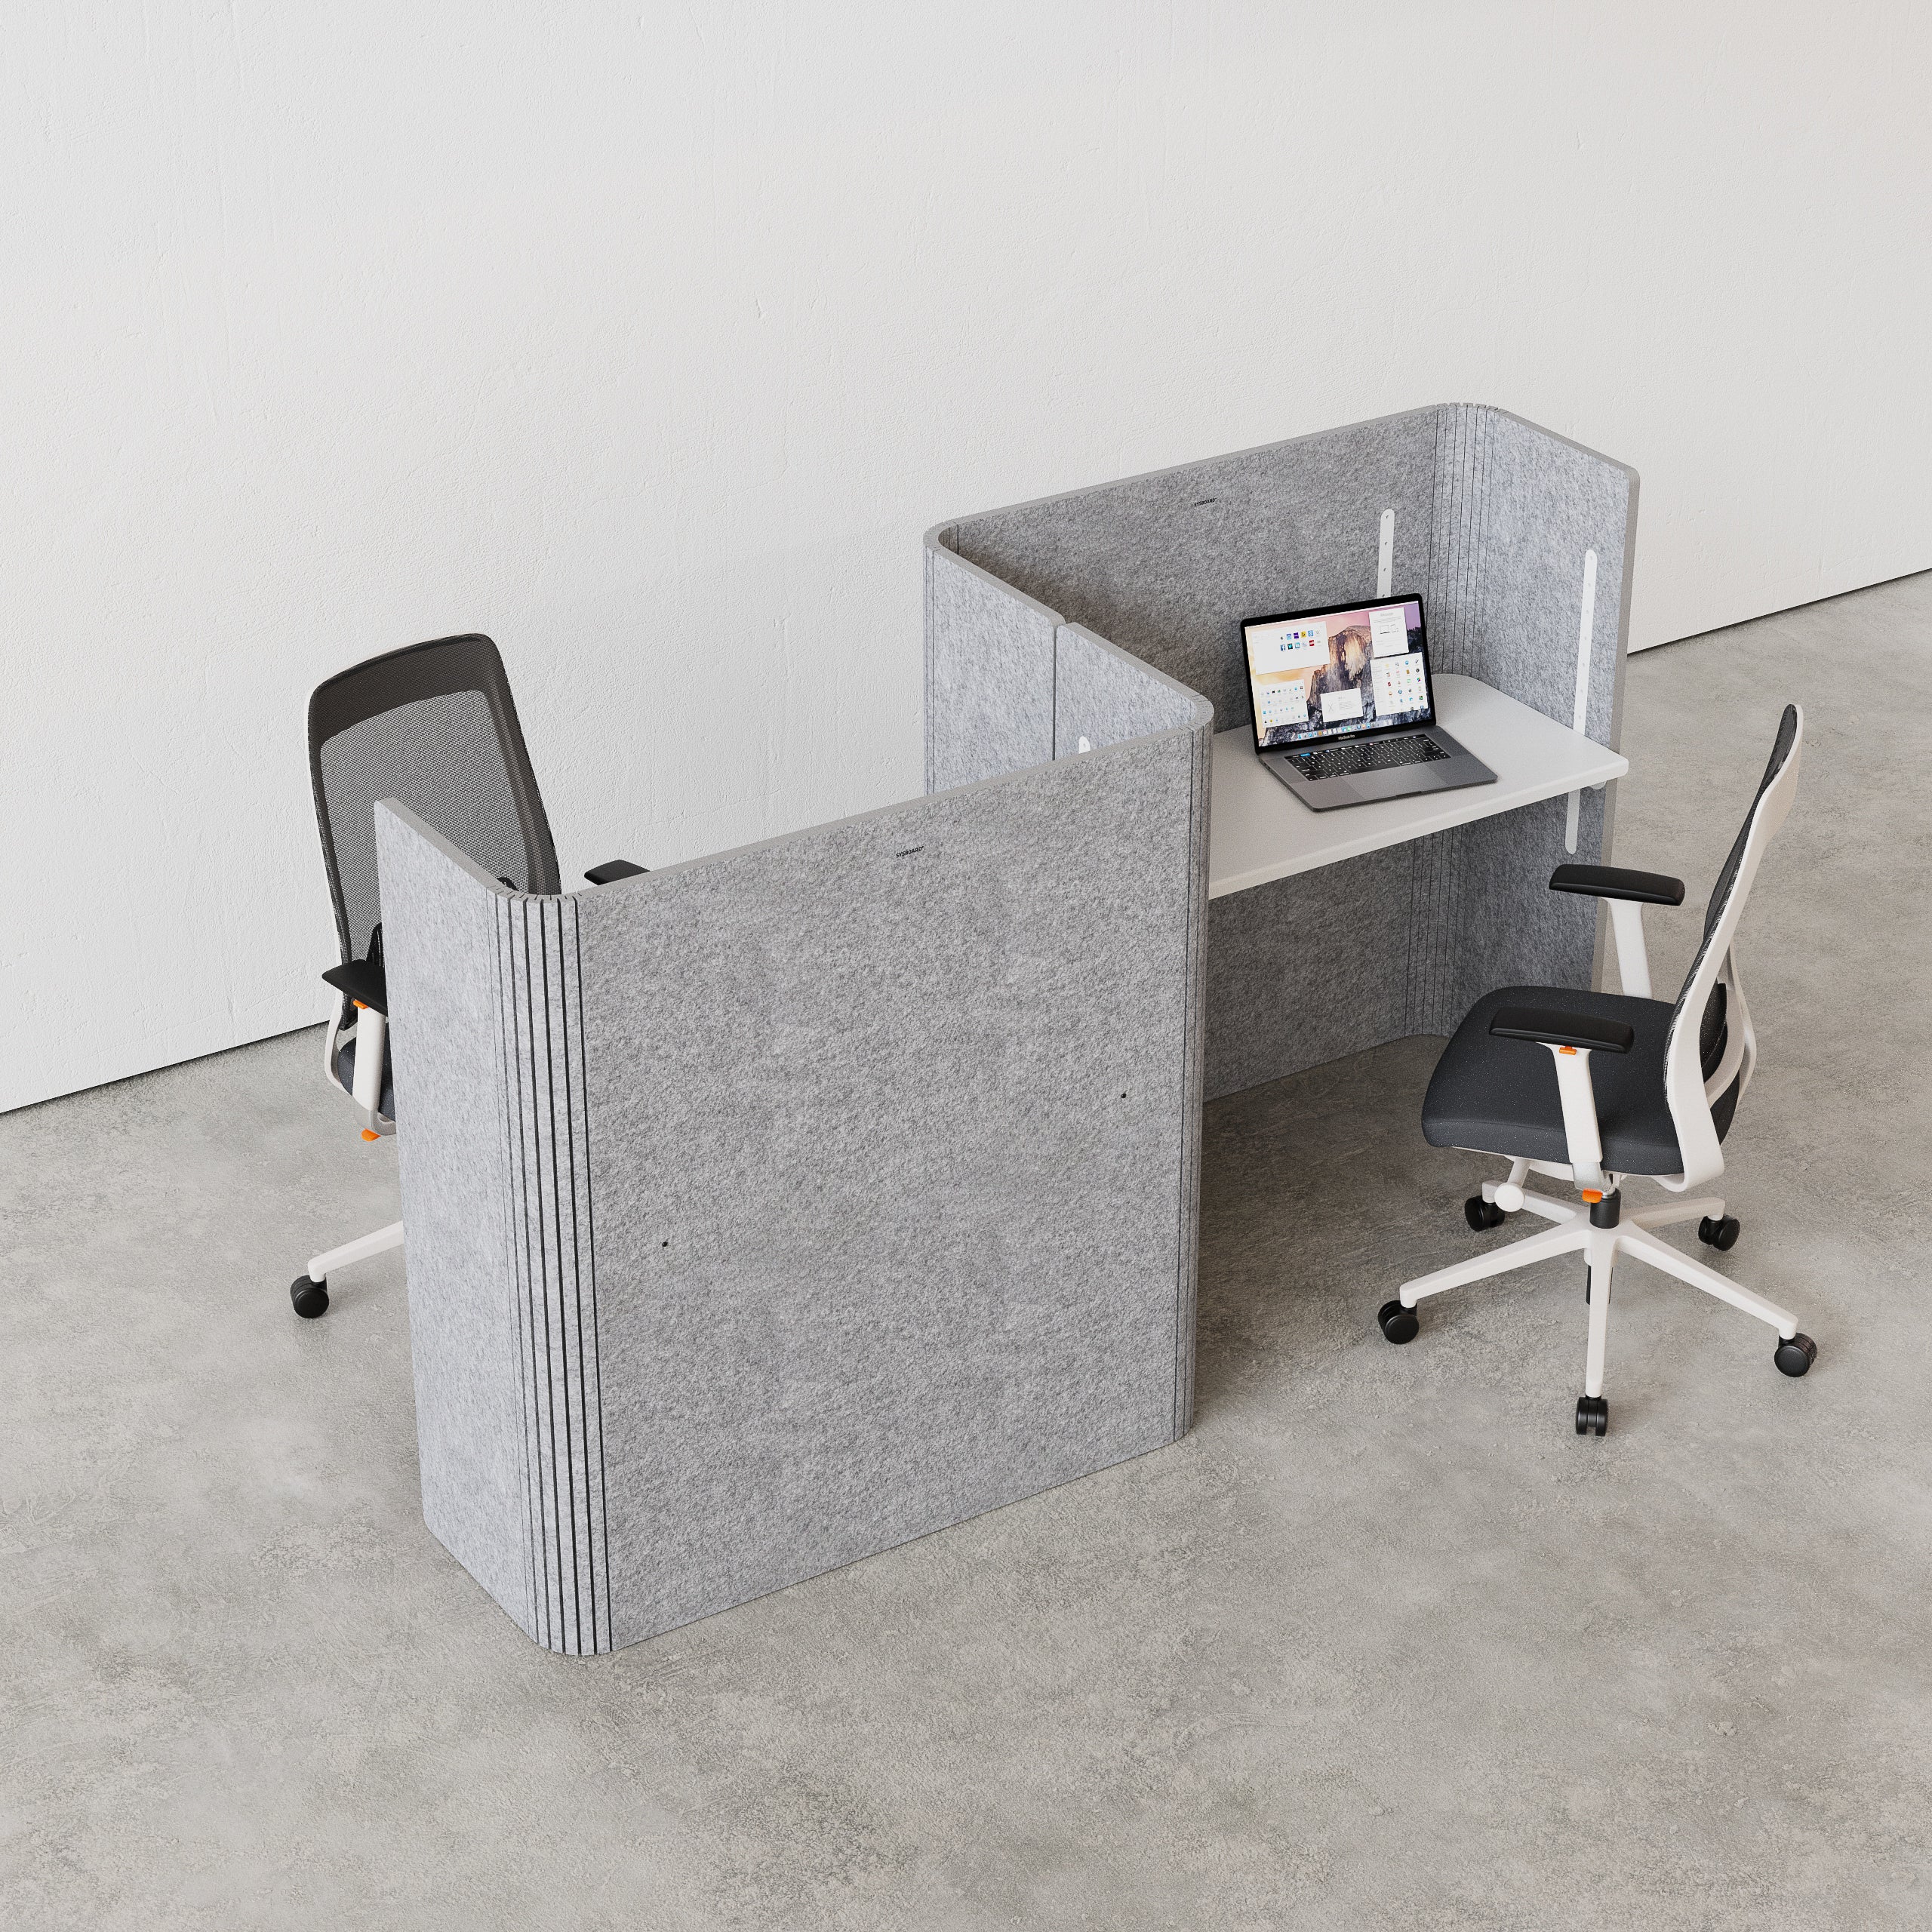 FLEX DESK normal grau, ist ein akustisch hoch wirksamer Schreibtisch innerhalb des FLEX akustik Familie. In verschiedenen farben erhältlich, biegsam, ökologisch, recycelt, höhenverstellbar, Ergonomie, Home Office, SYSBOARD